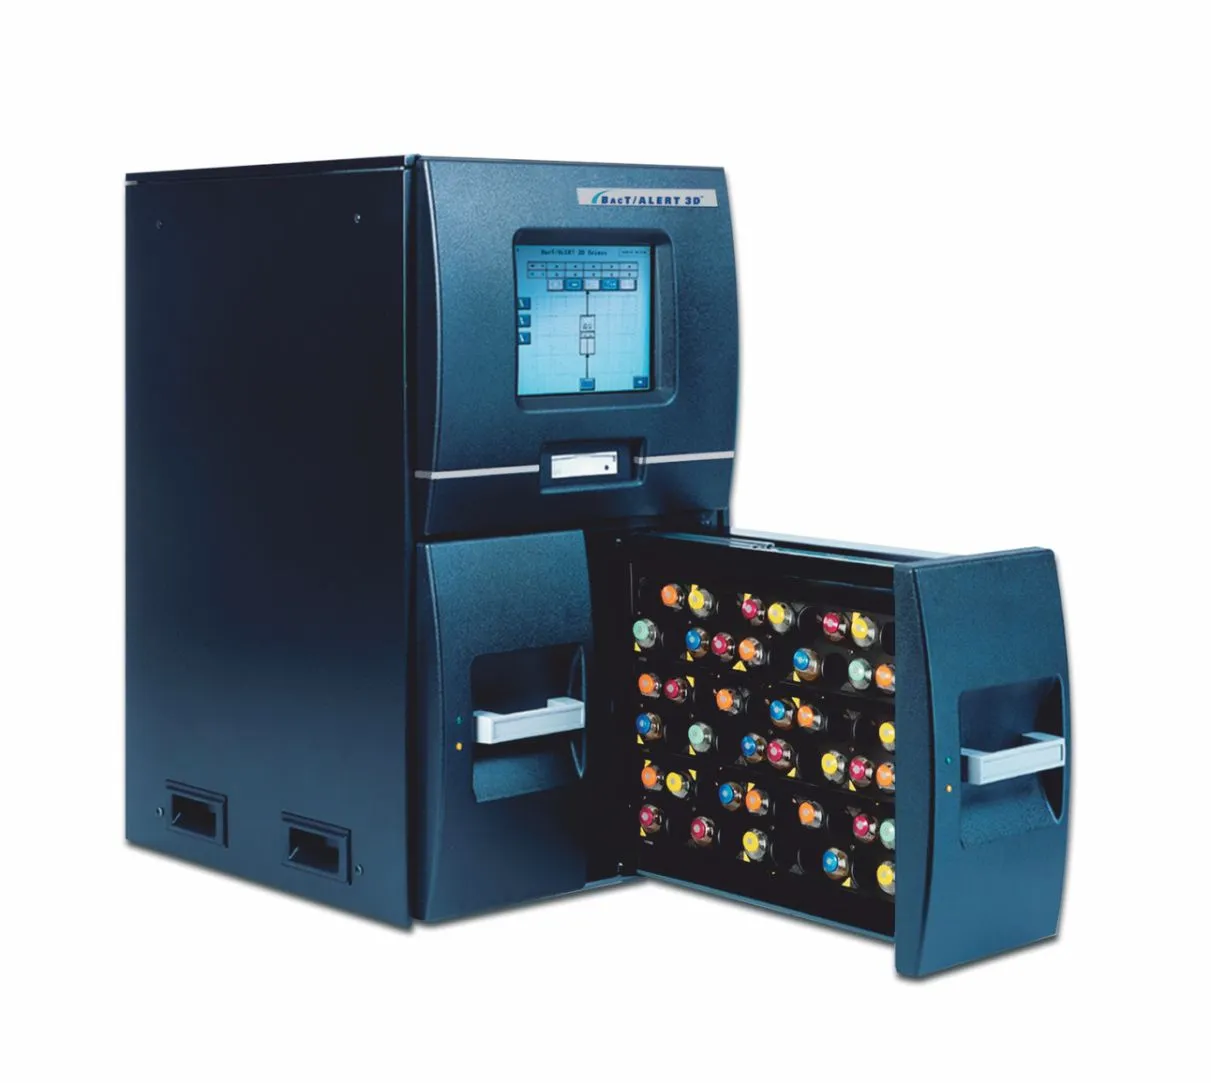 Bact/Alert 3D Combo Avtomatik bakteriologik analizator#1